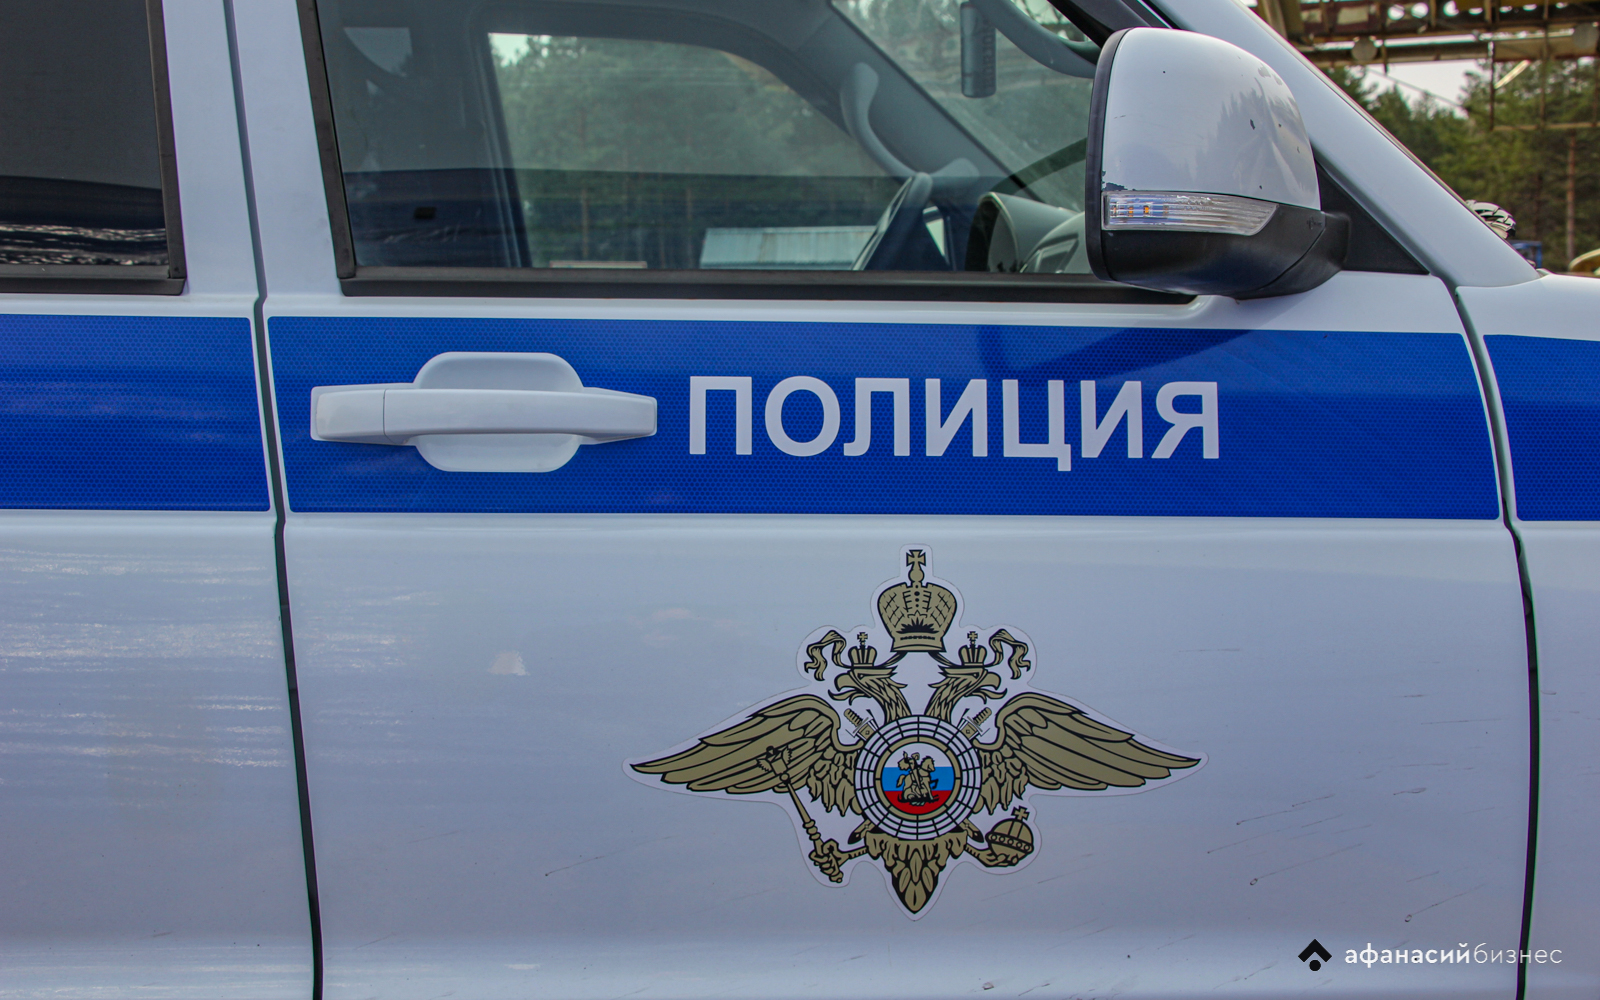 Рассерженная женщина испортила машину жителя Тверской области